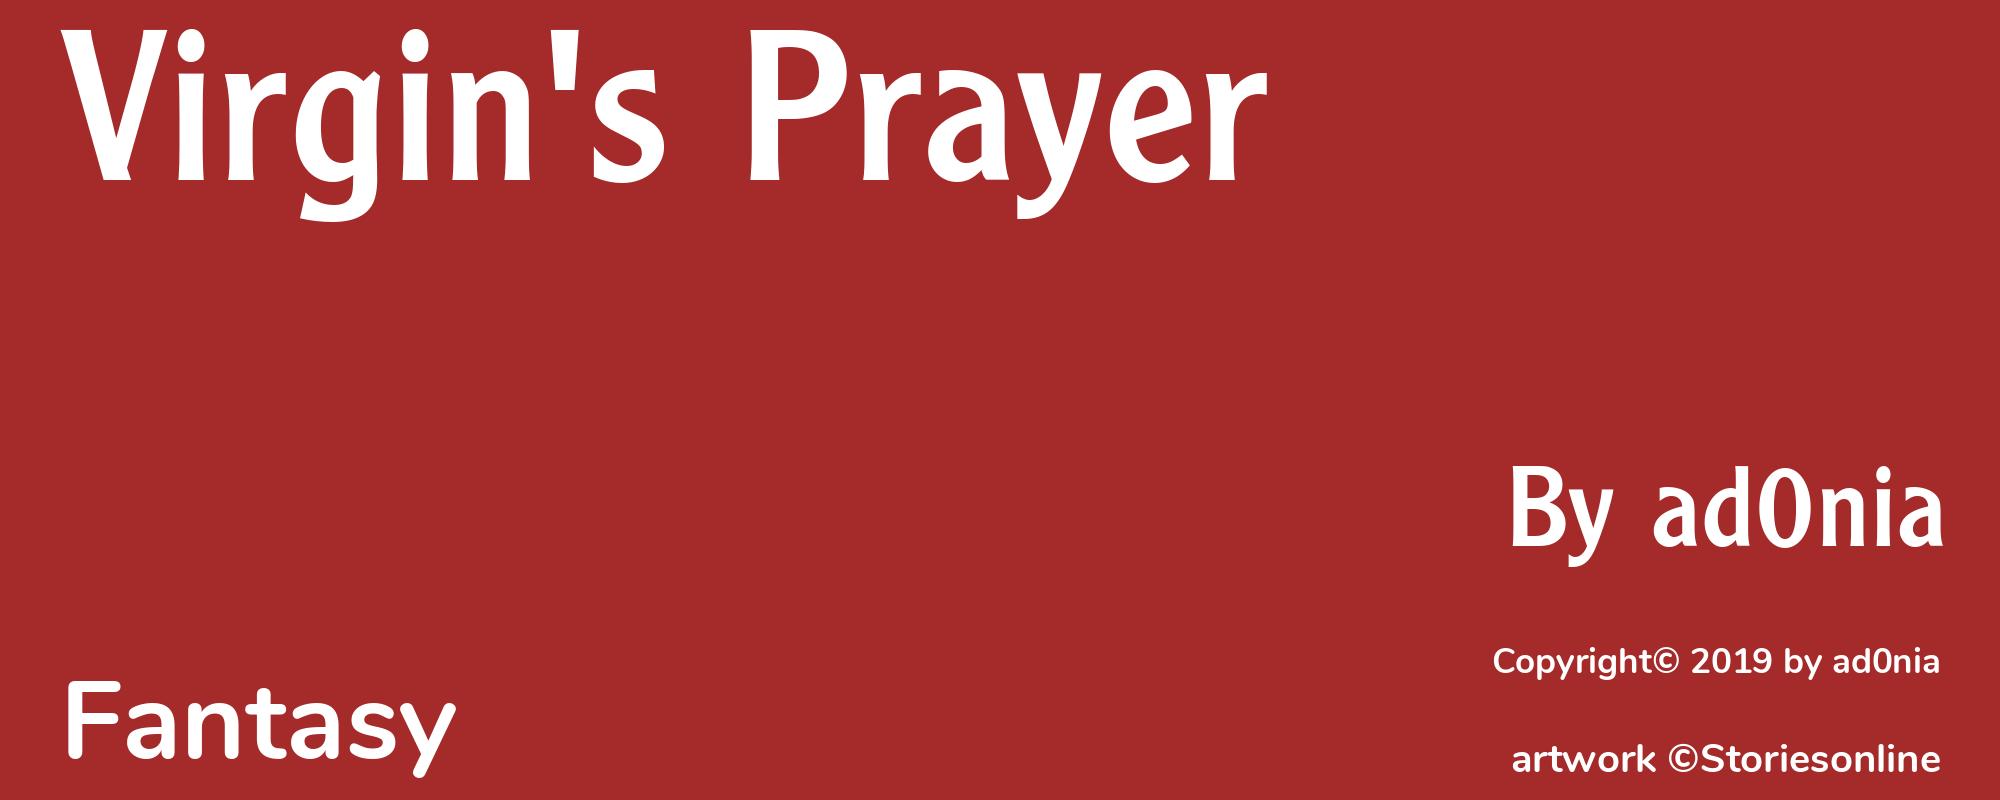 Virgin's Prayer - Cover